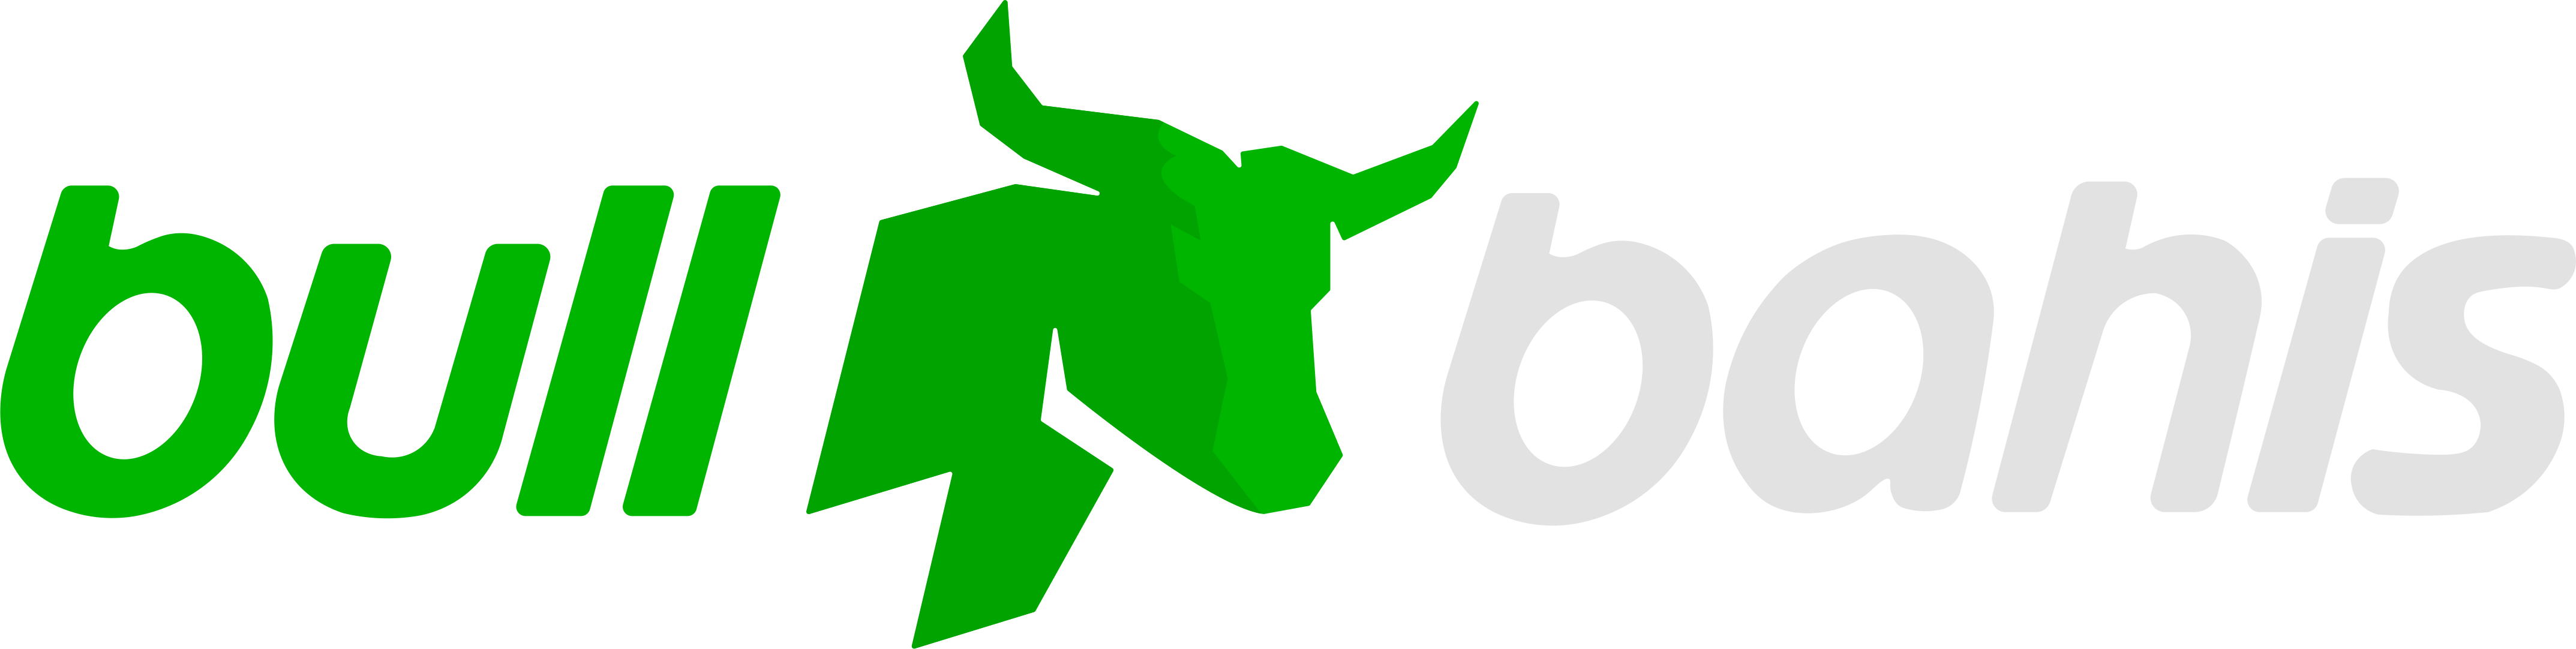 Bullbahis Bonusları |Güvenilir Güncel Kayıt Adresi